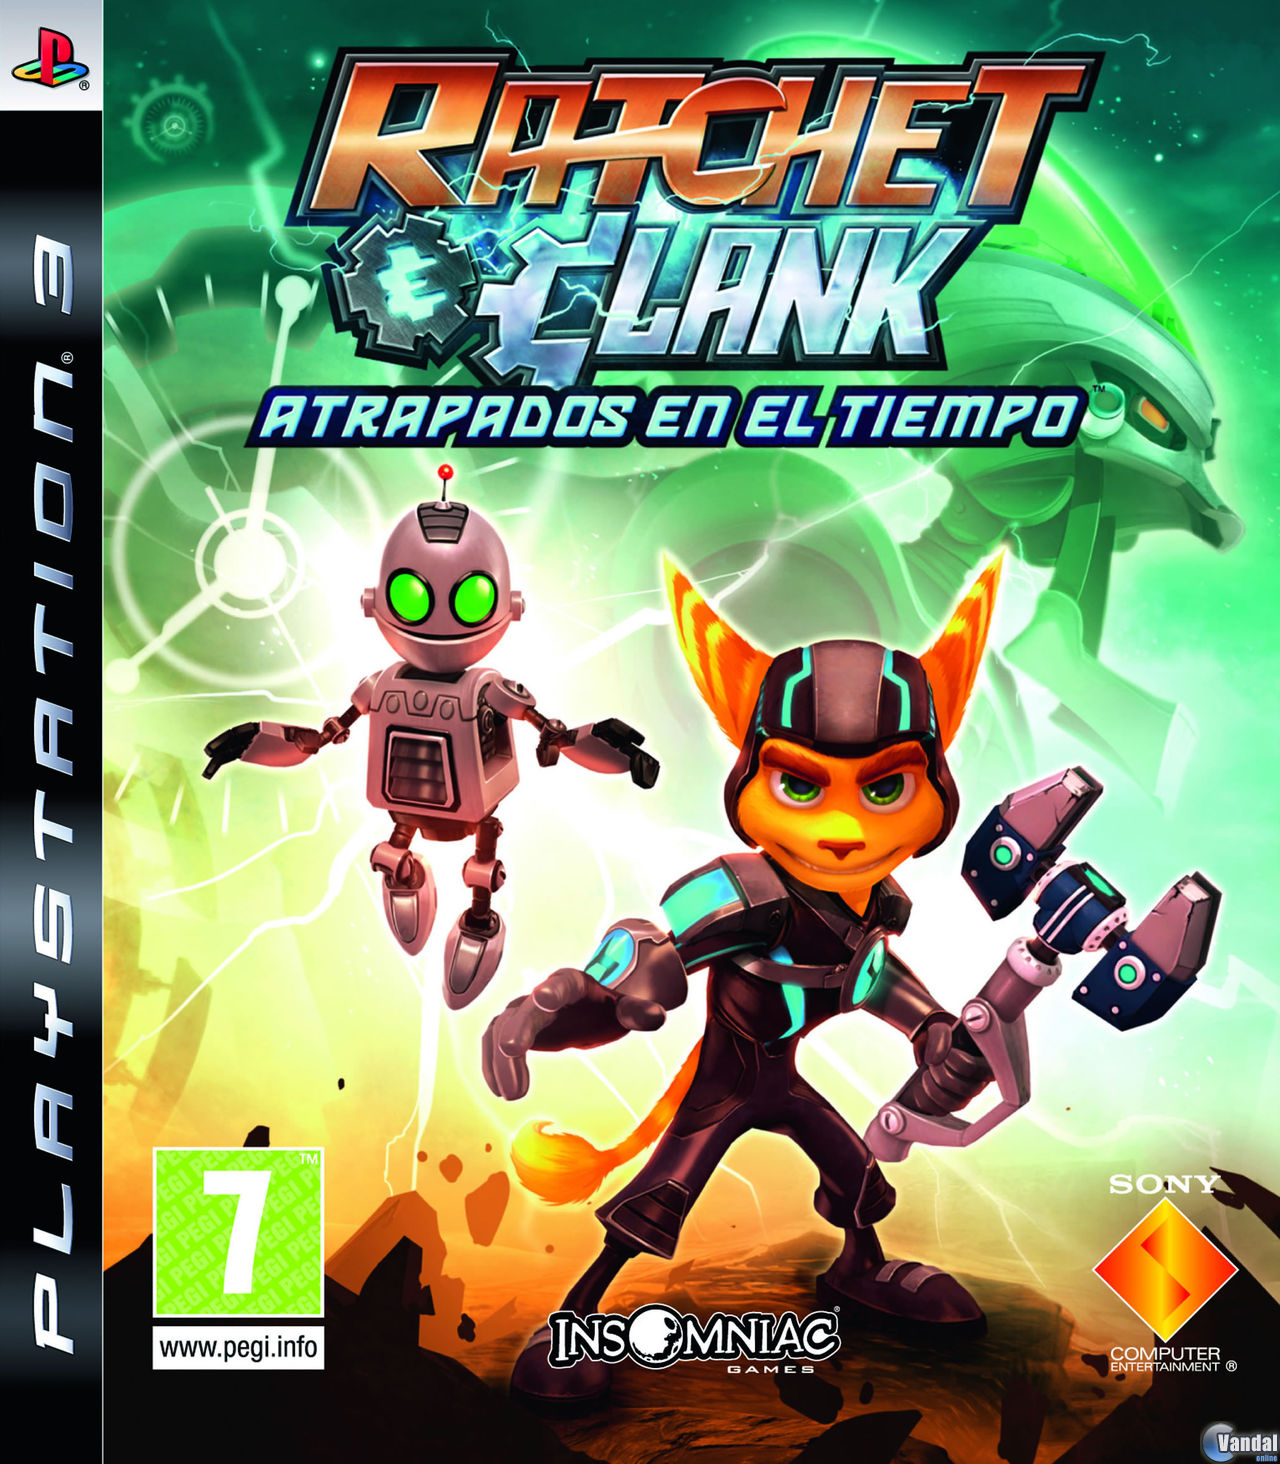 Parque jurásico Finalmente Traición Ratchet and Clank: Atrapados en el tiempo - Videojuego (PS3) - Vandal